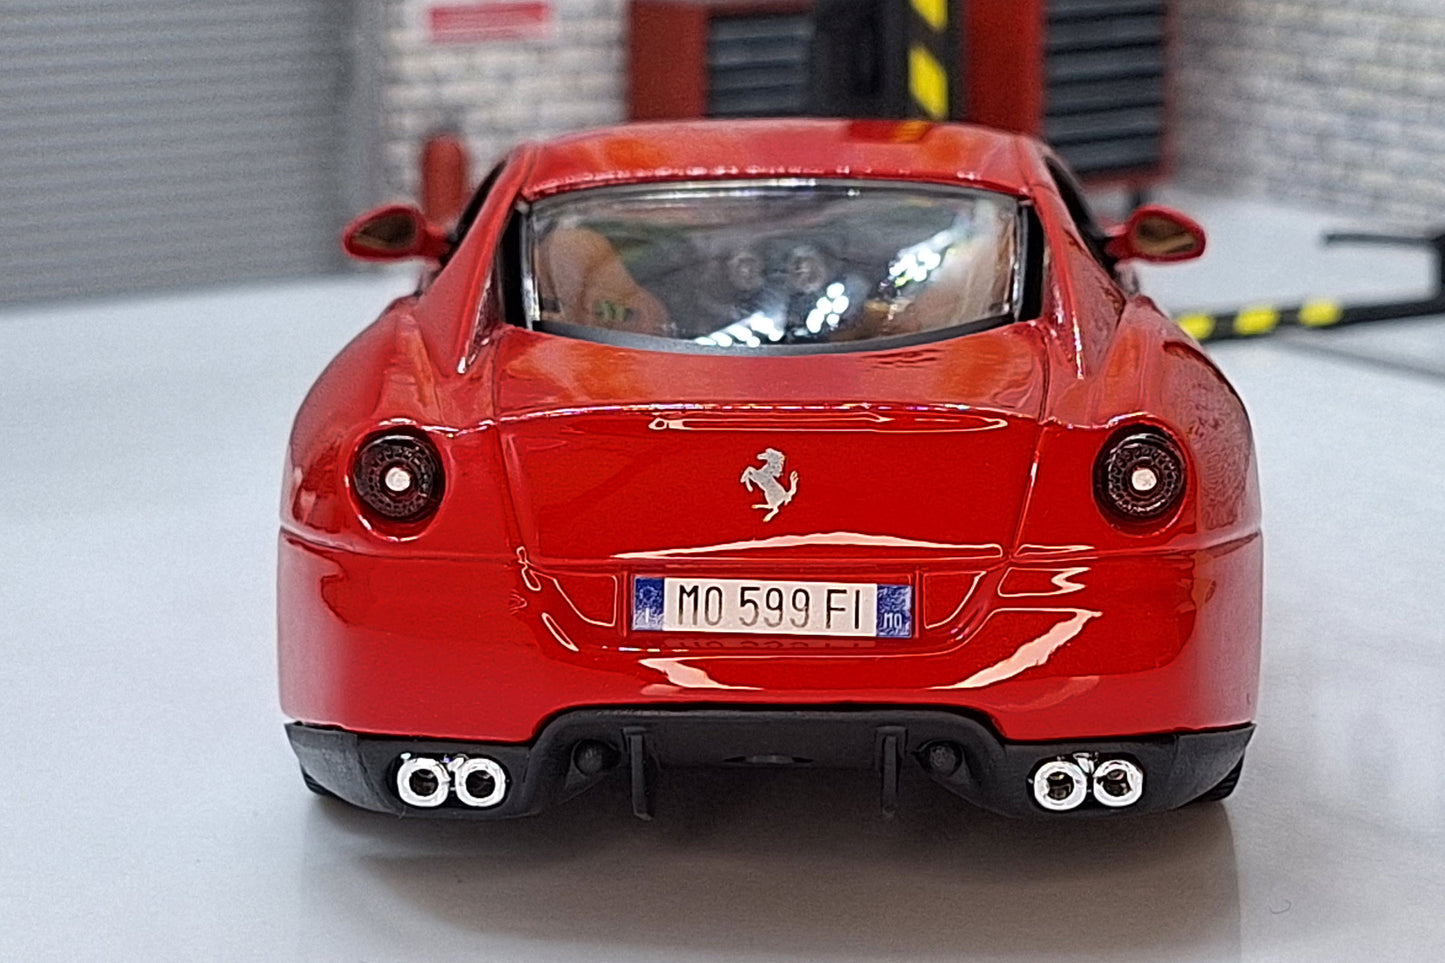 Ferrari 599 GTB Fiorano - 2006 1:24 Scale Car Model in Display Case